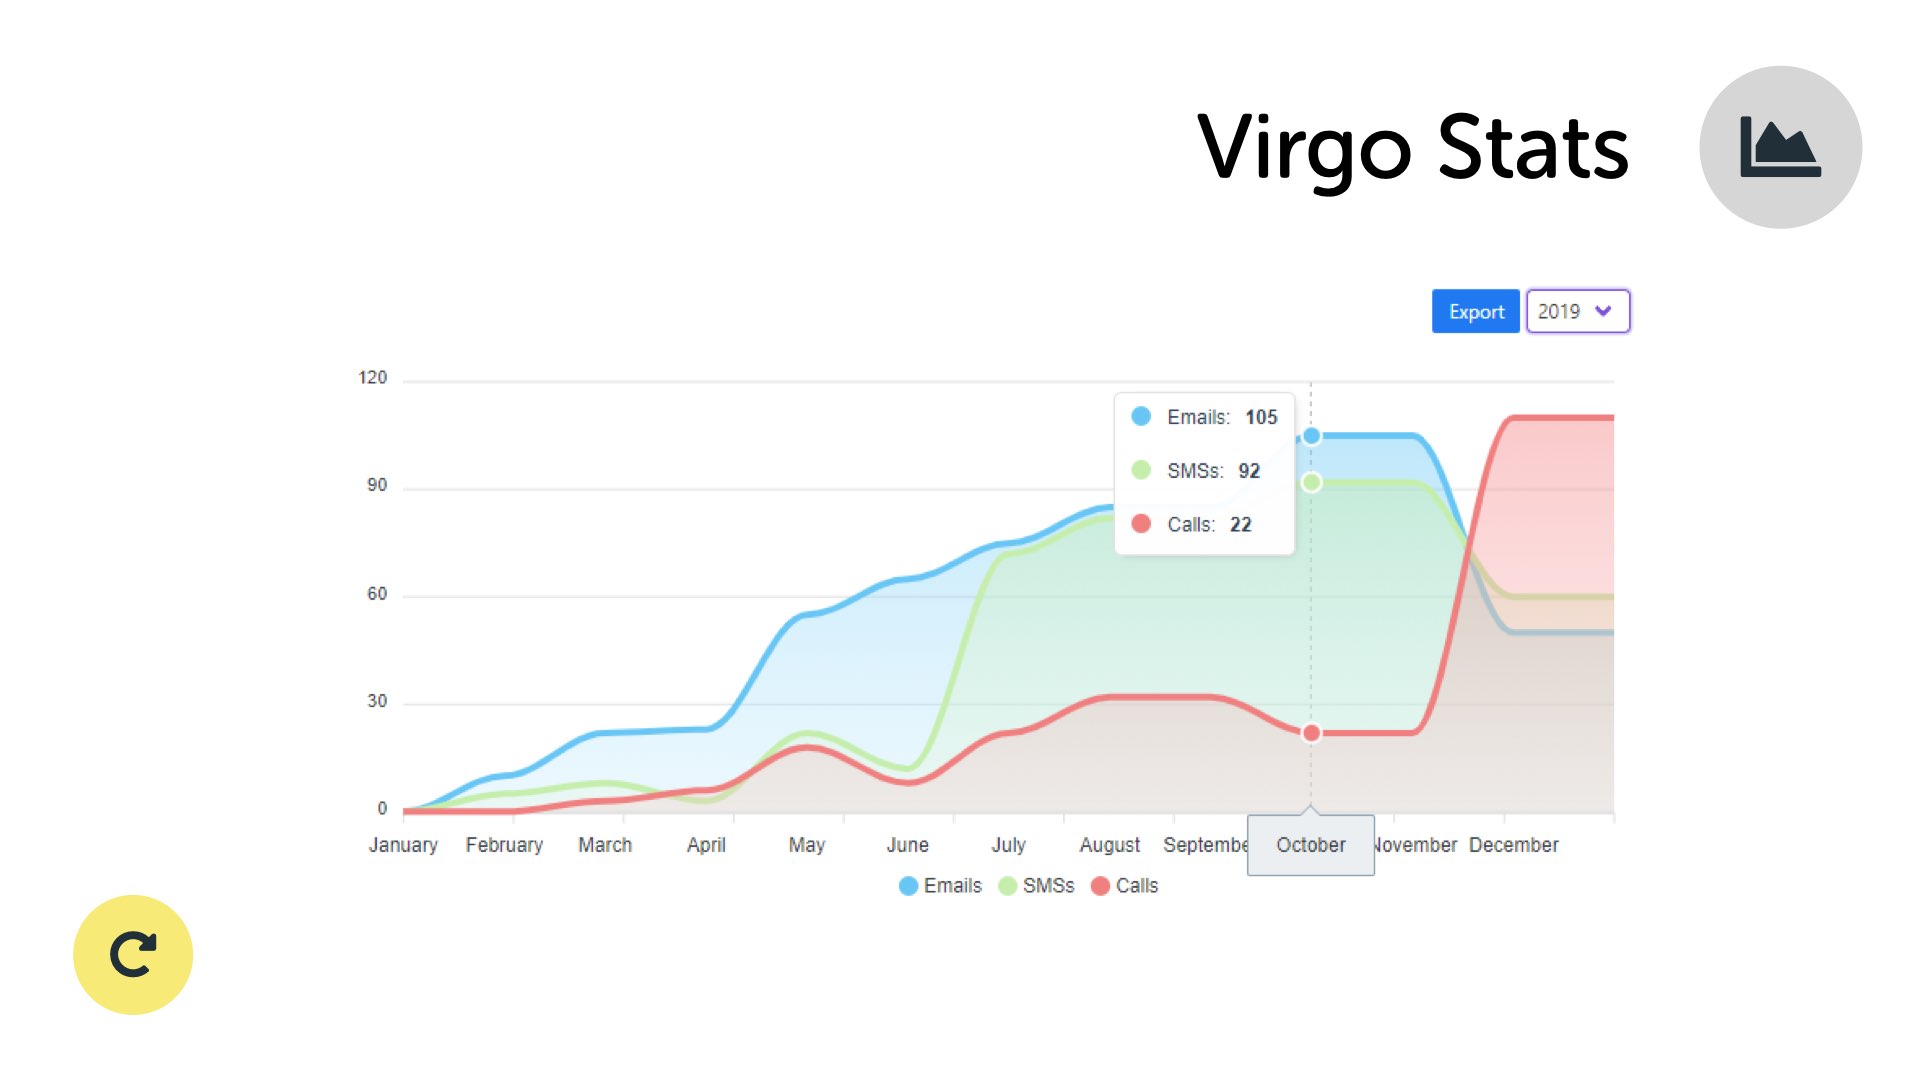 Virgo Stats